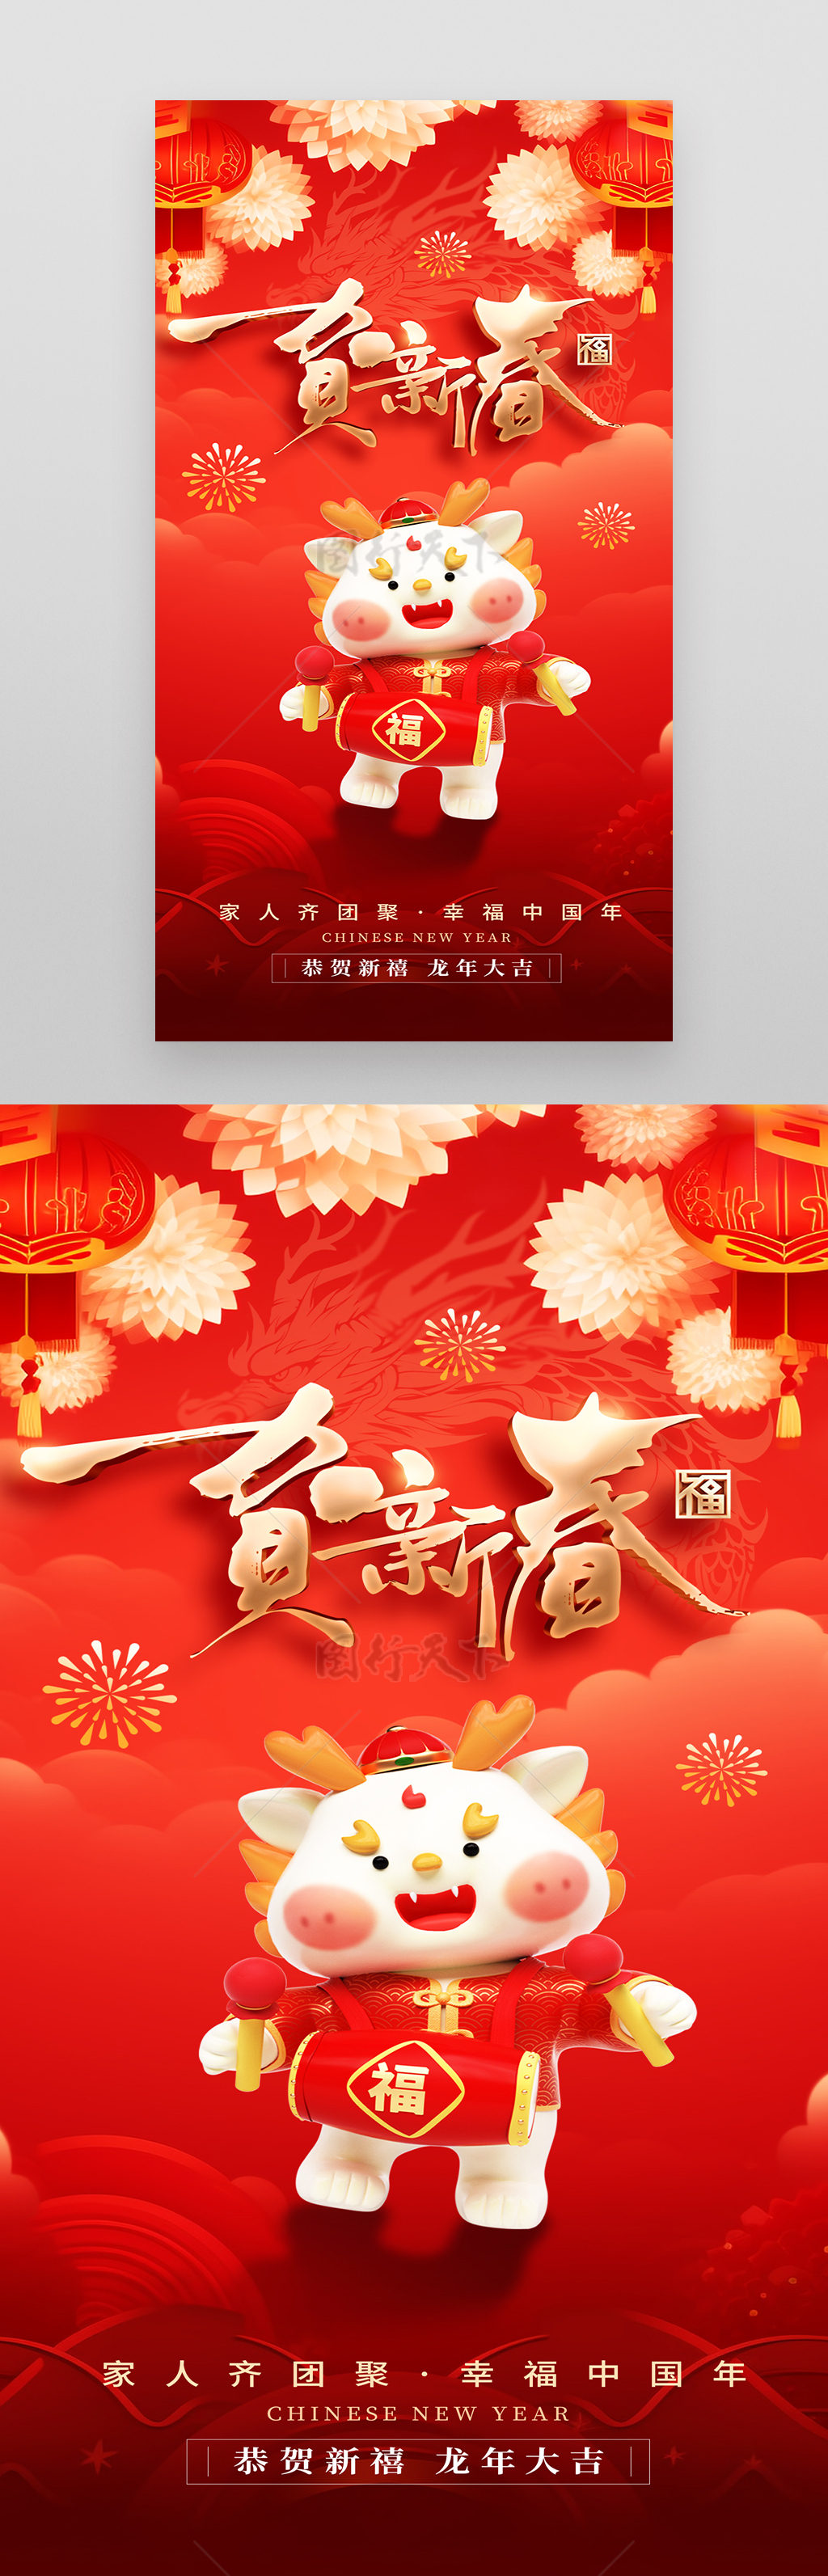 红色喜庆贺新春新年春节龙年海报